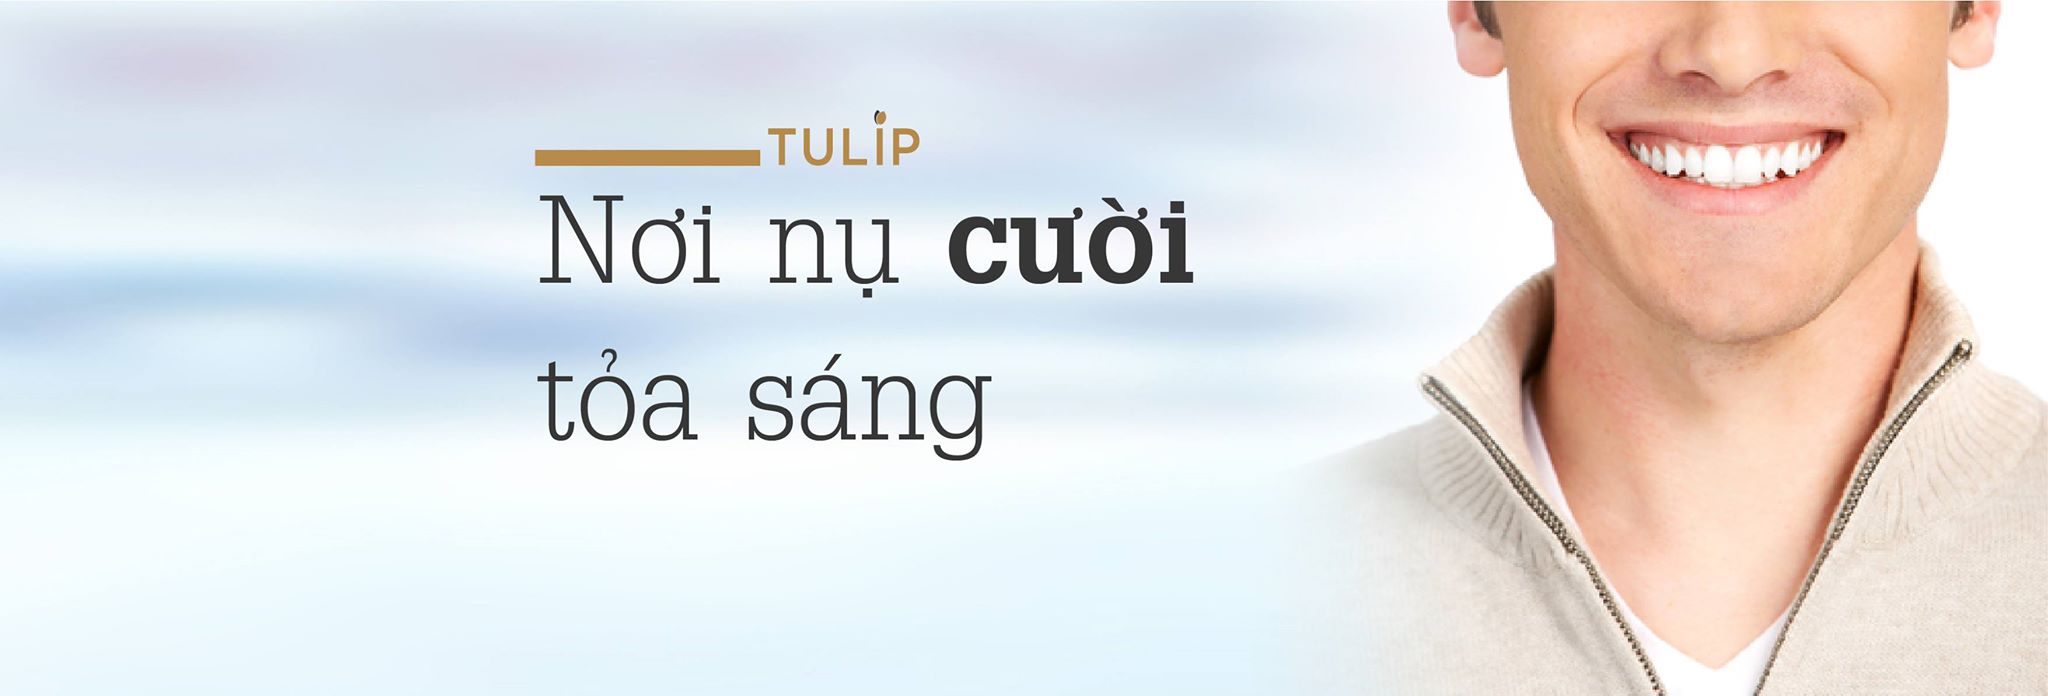 Nha khoa Tulip